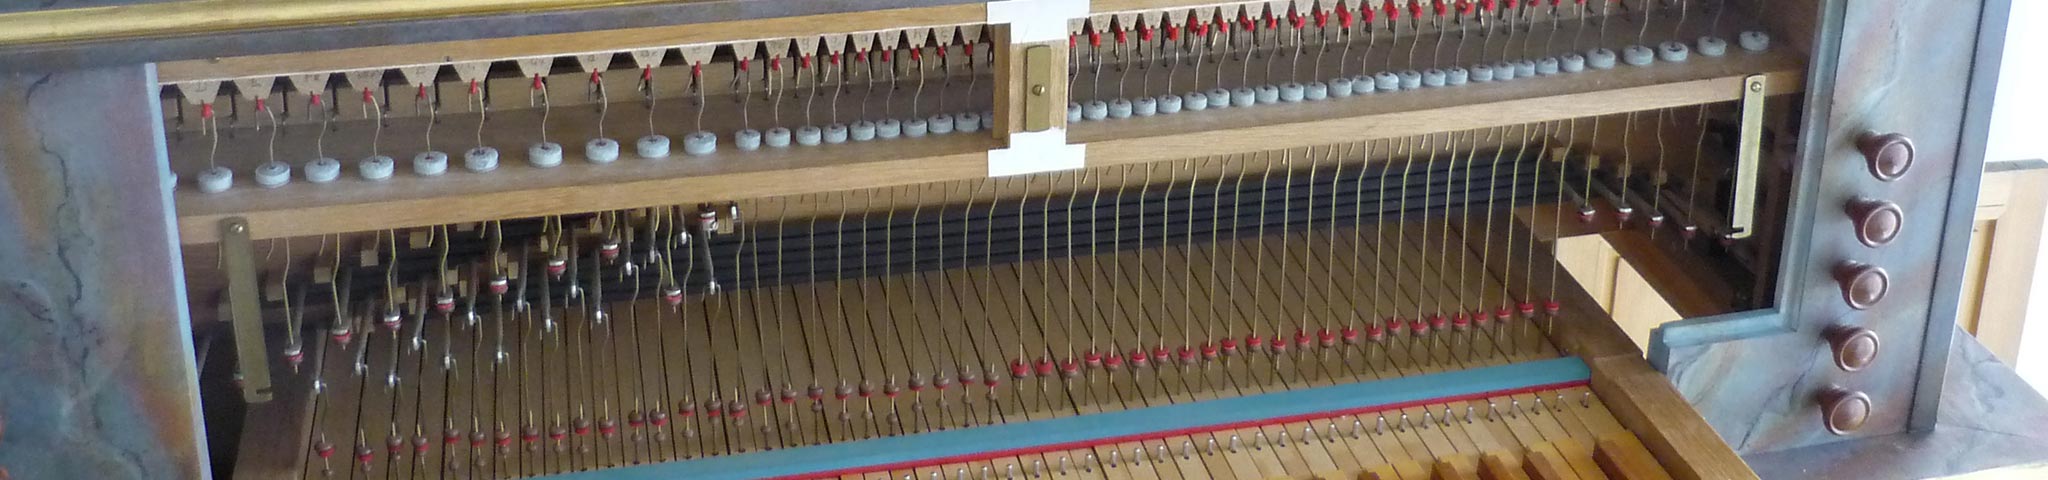 Orgel- und Cembalobau B. Fleig